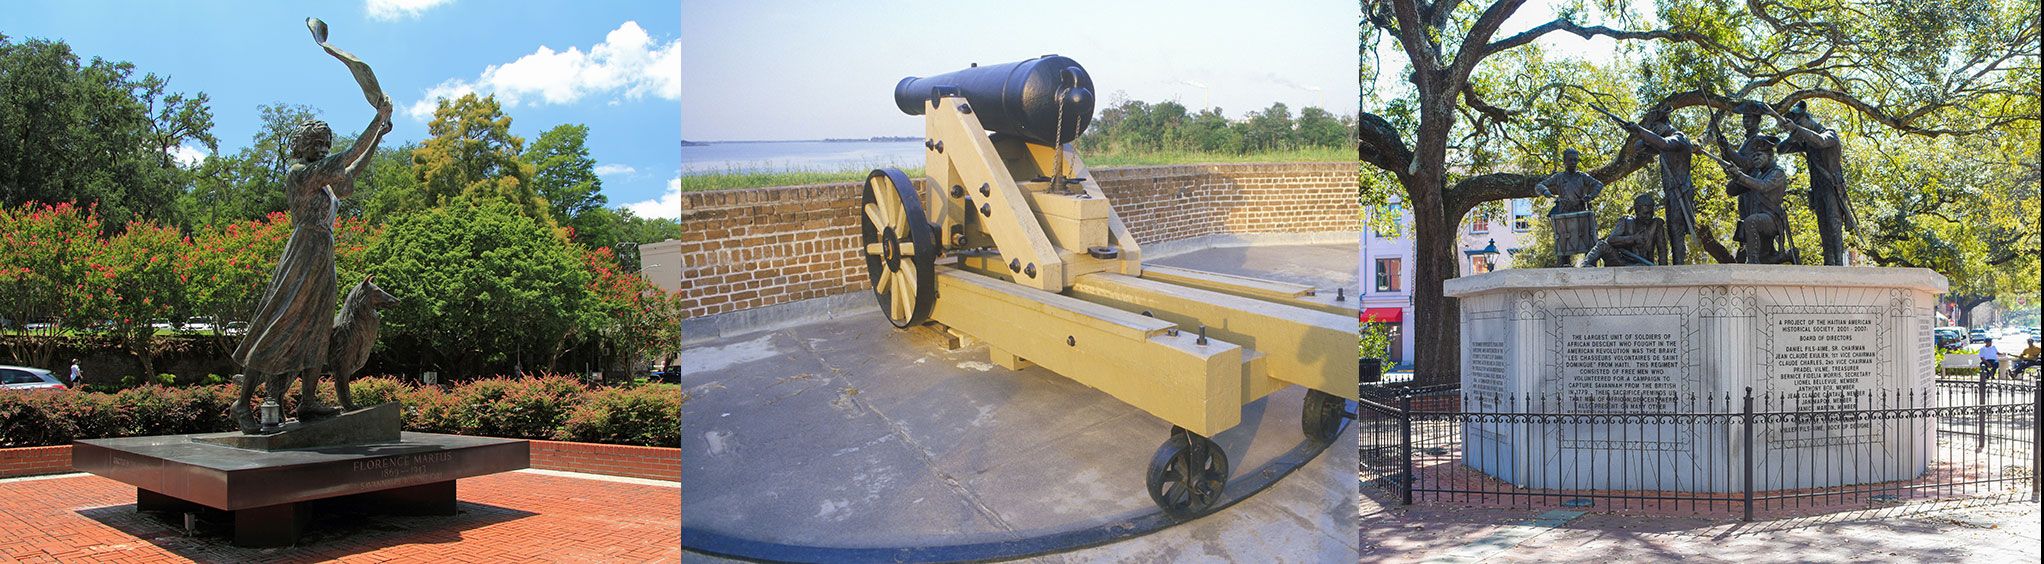 Civil War Sites in Savannah, GA